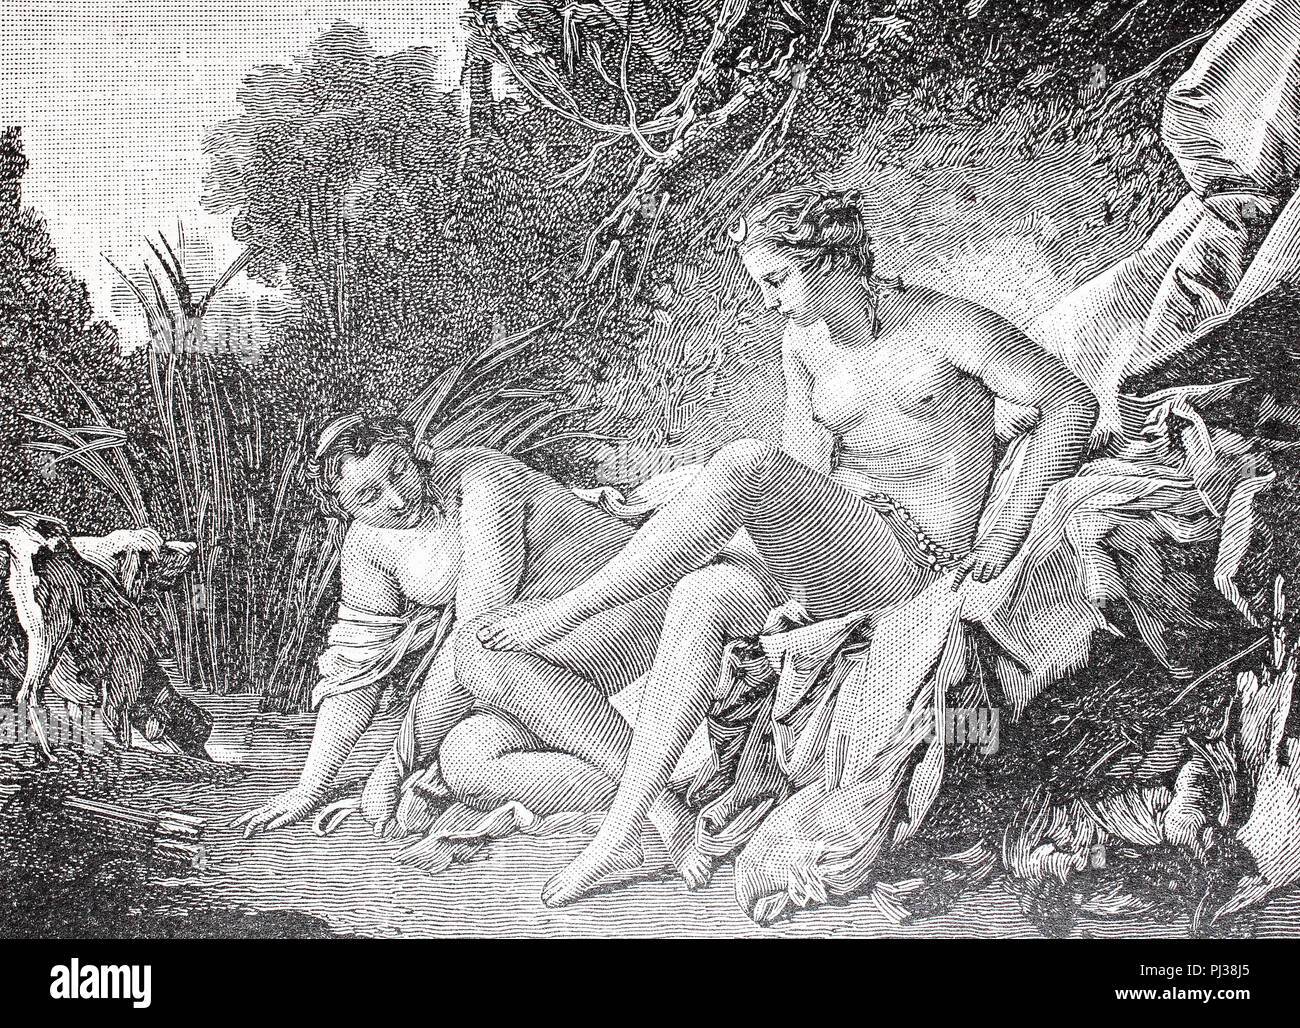 Diana, la déesse de la chasse, de la lune, et la nature dans la mythologie romaine, après son bain, l'amélioration de la reproduction numérique d'un original de l'année 1895 Banque D'Images